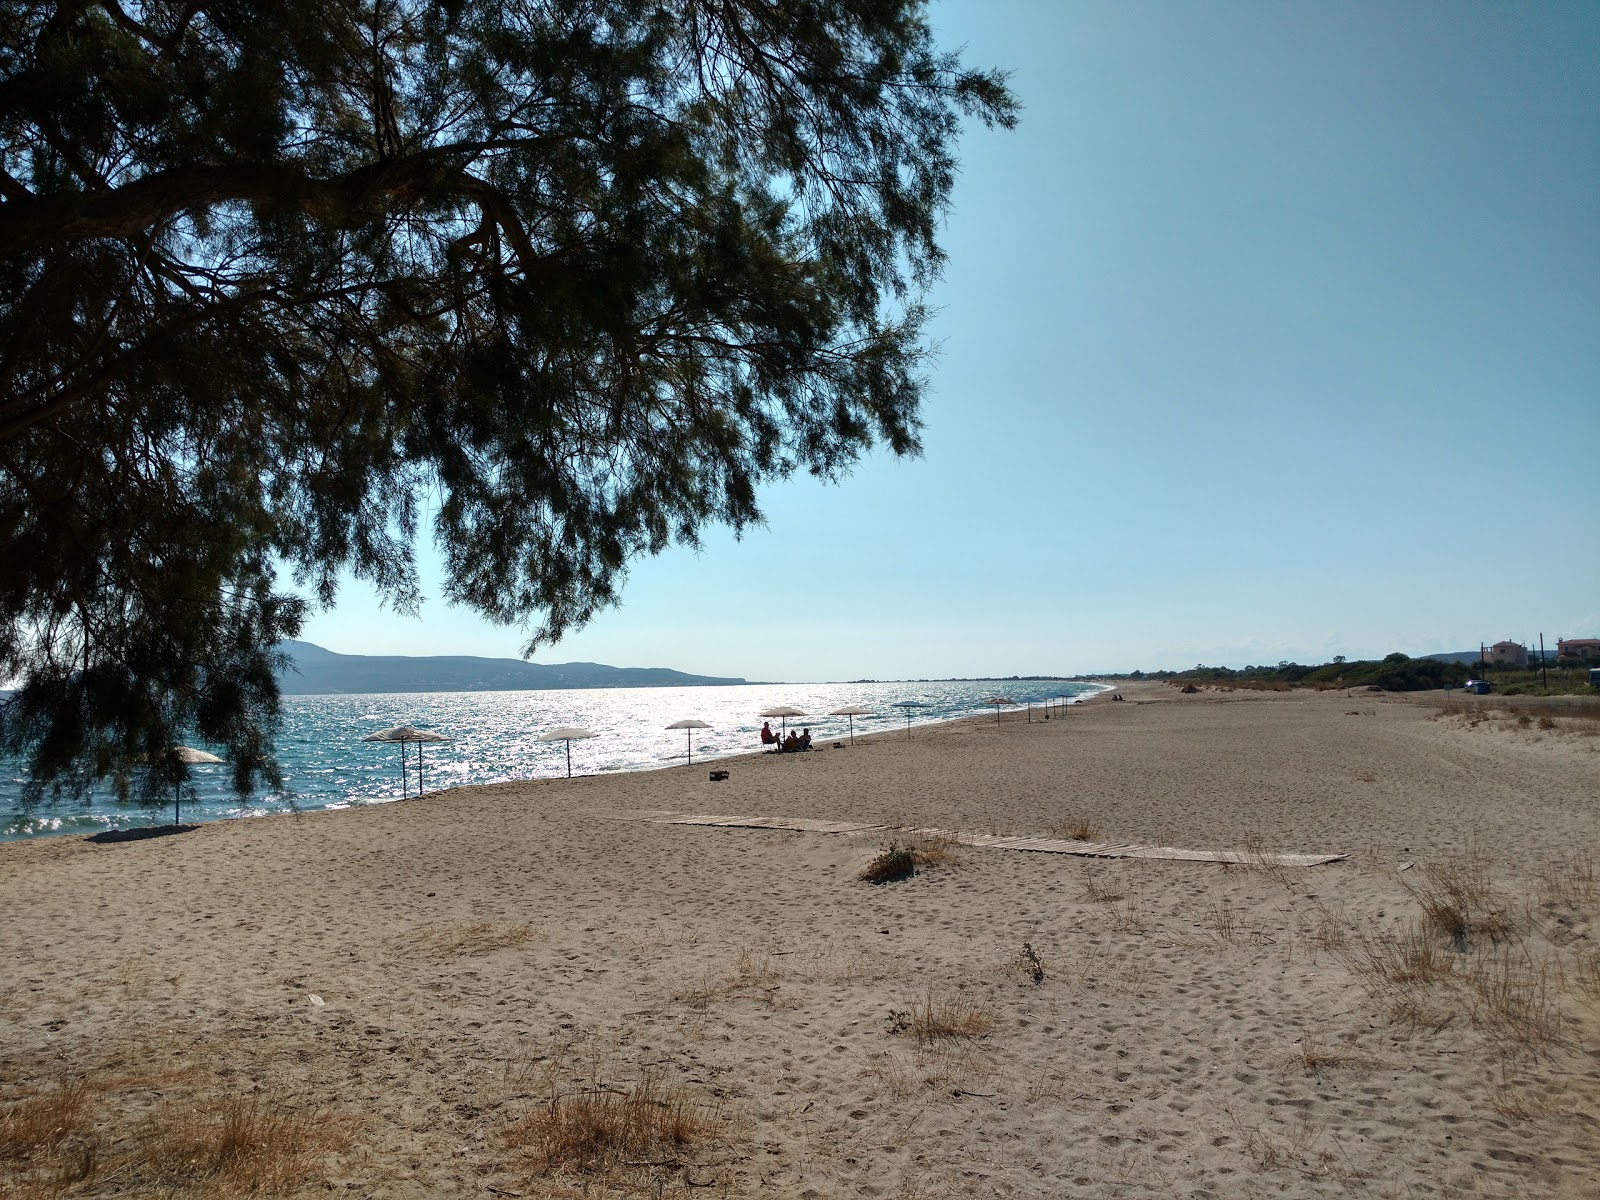 Zdjęcie Maganos beach - popularne miejsce wśród znawców relaksu